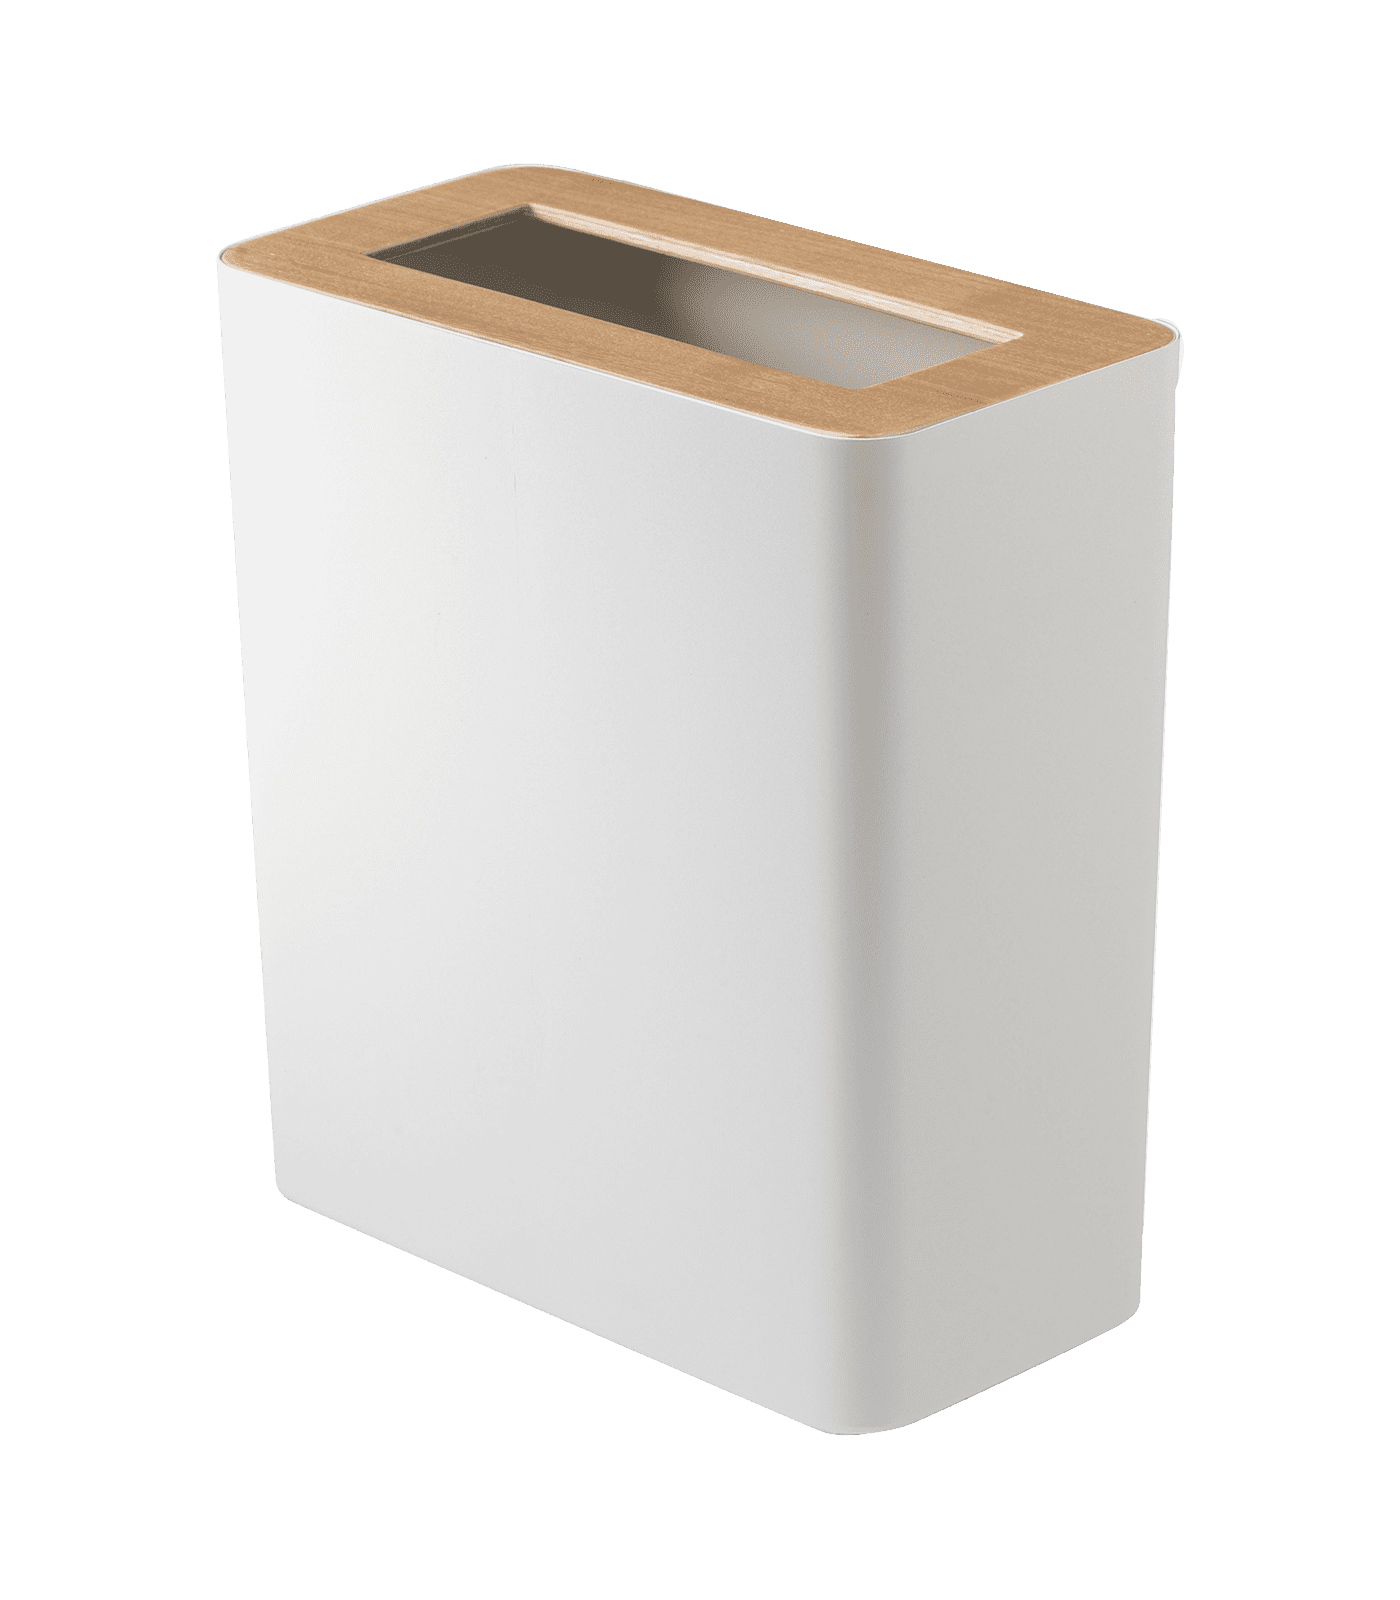 Modern White Steel & Wood Slim Rectangular Wastebasket, 2.5 Gallons